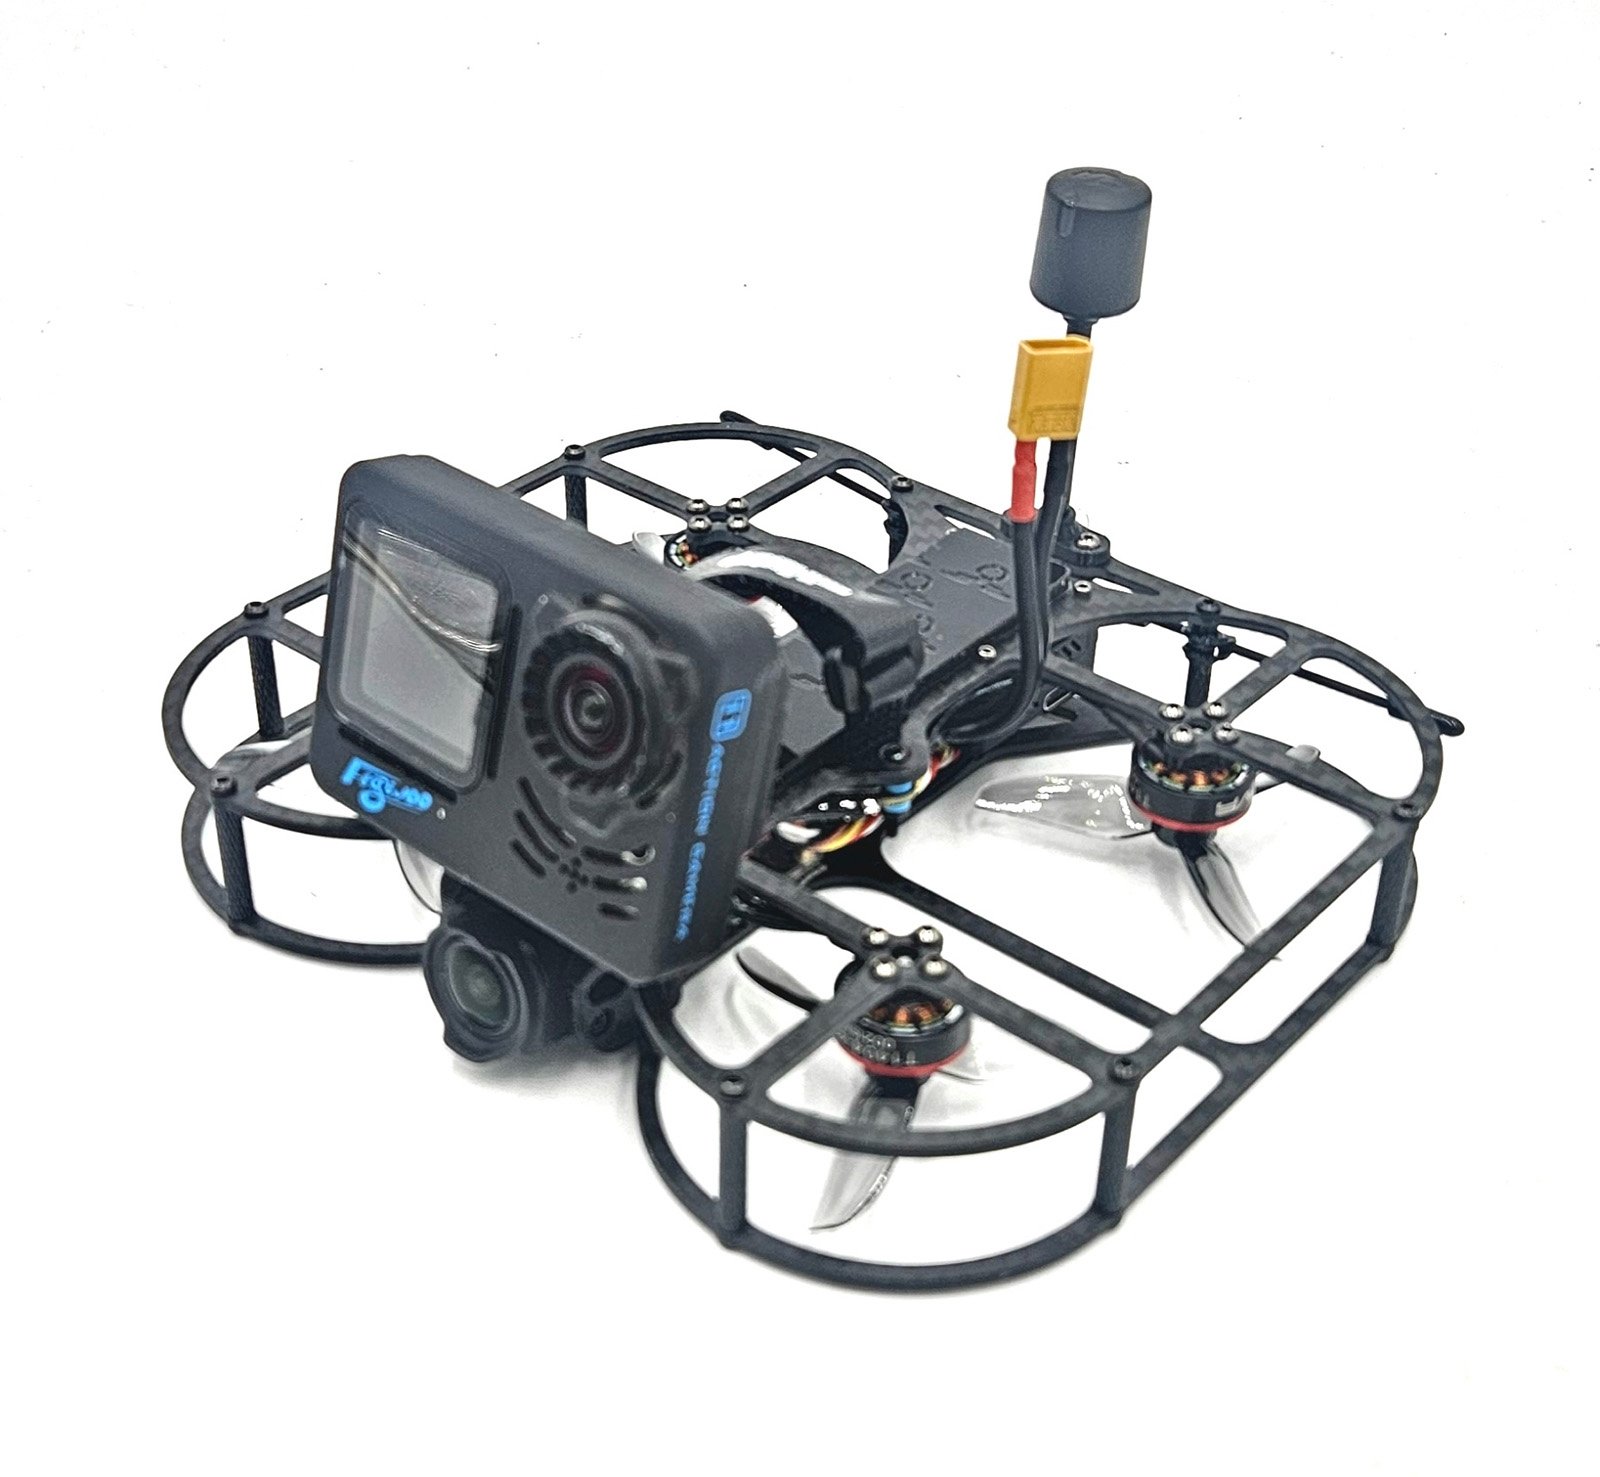 Imagen del dron GoPro FPV, una aeronave ligera capaz de volar en zonas urbanizadas y obtener exenciones para sobrevolar personas con las debidas evaluaciones de riesgo y aprobaciones.